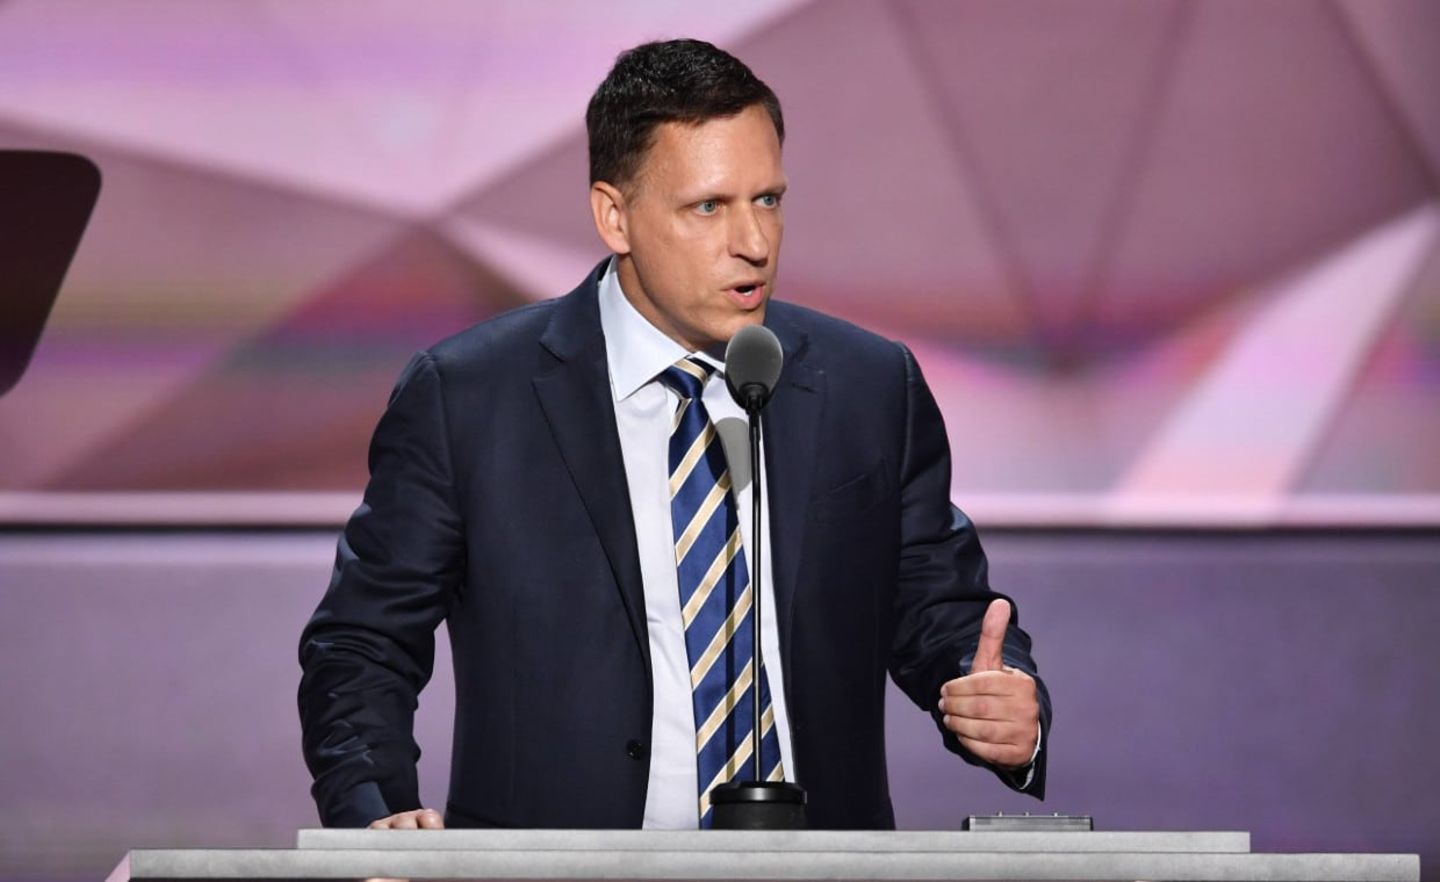 Peter Thiel spricht auf der Republican National Convention 2016 in Cleveland, Ohio